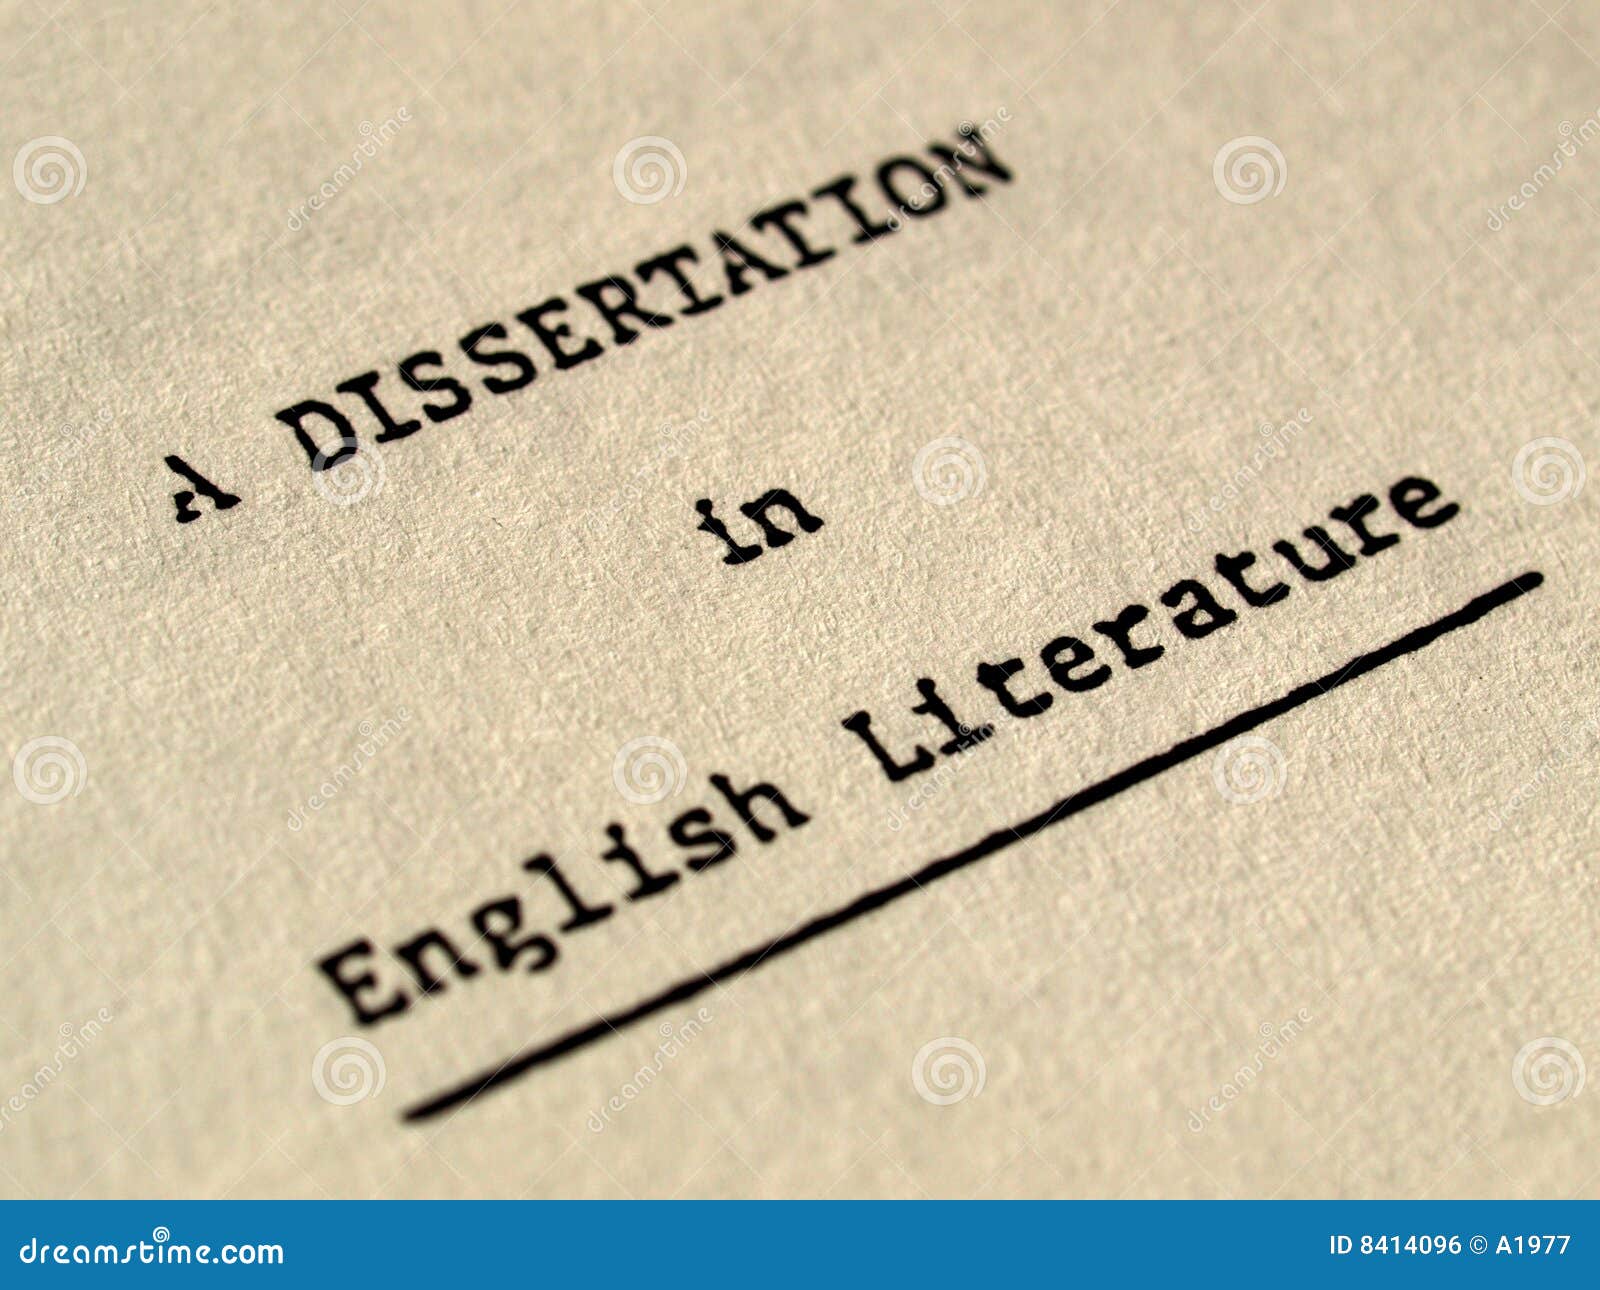 Research Topics in English Literature